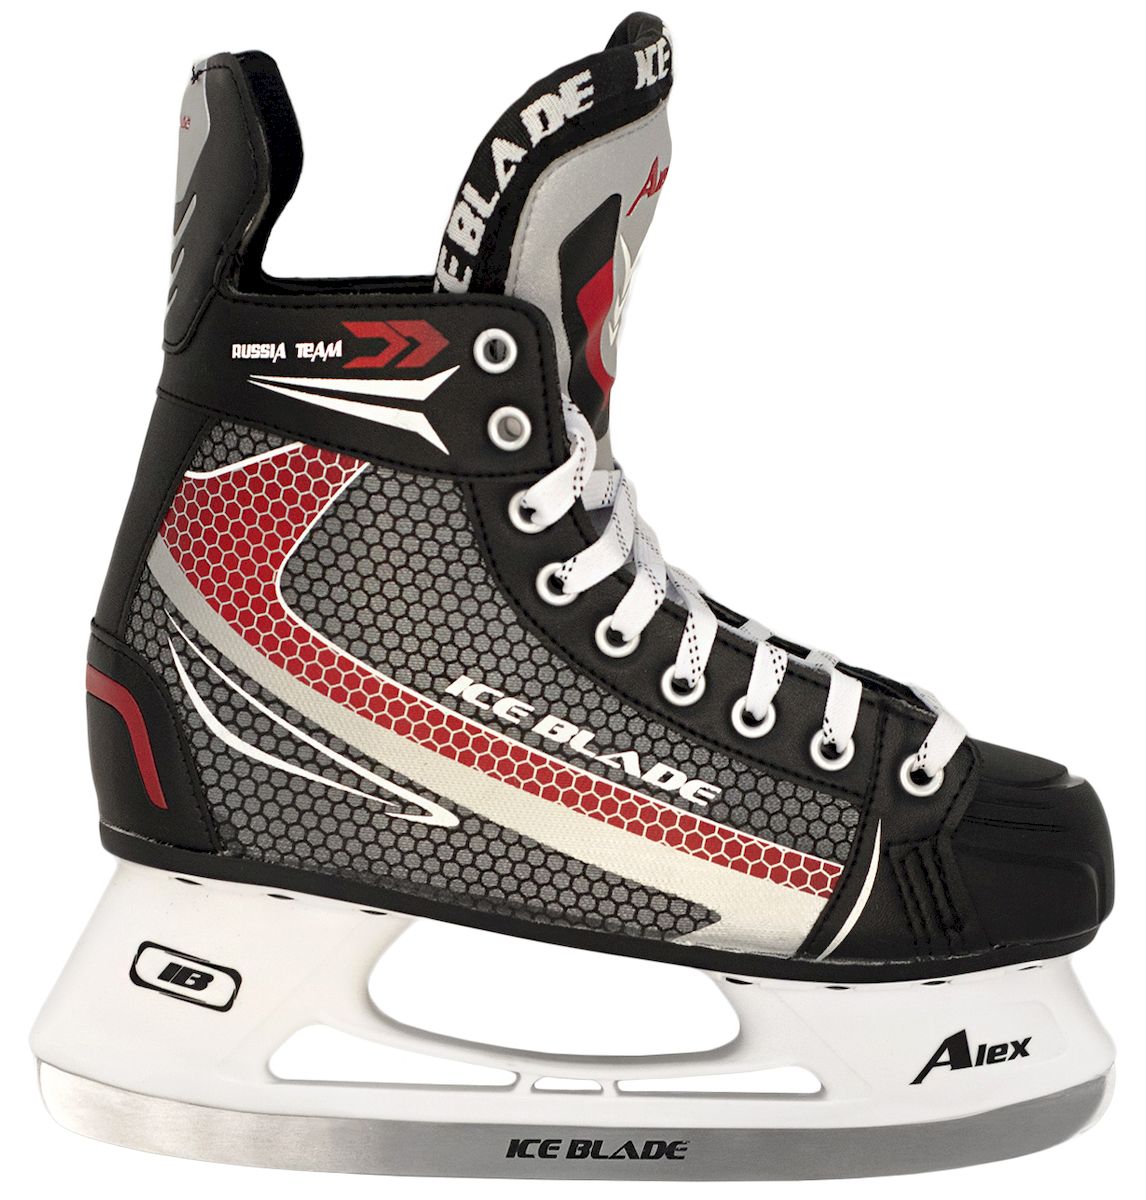 Коньки хоккейные Ice Blade Alex New, цвет: черный, красный, серый. УТ-00006868. Размер 37